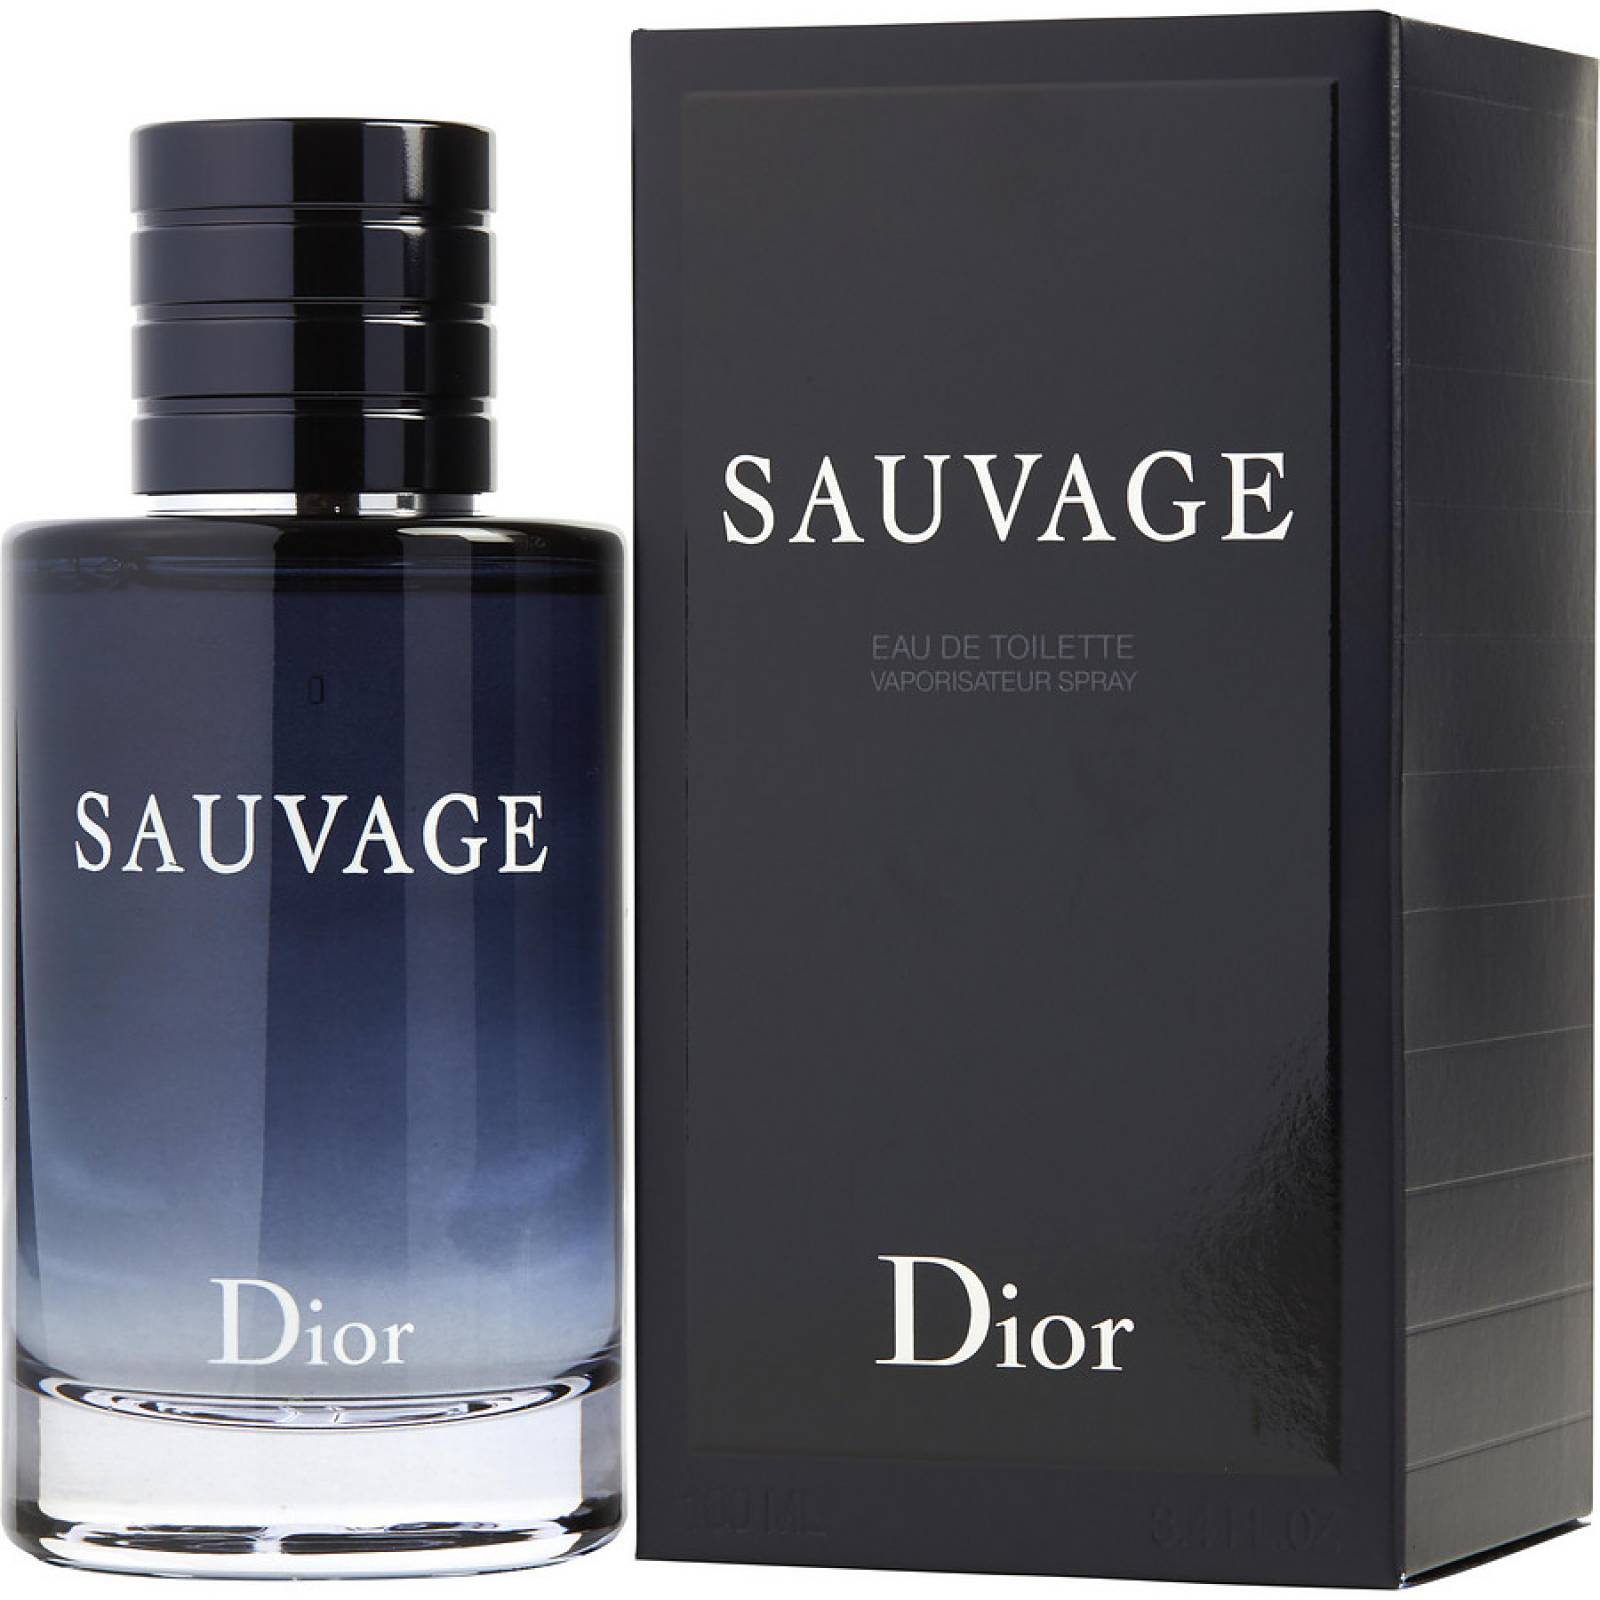 Perfume Sauvage Hombre De Christian Dior Edt 100ml Original